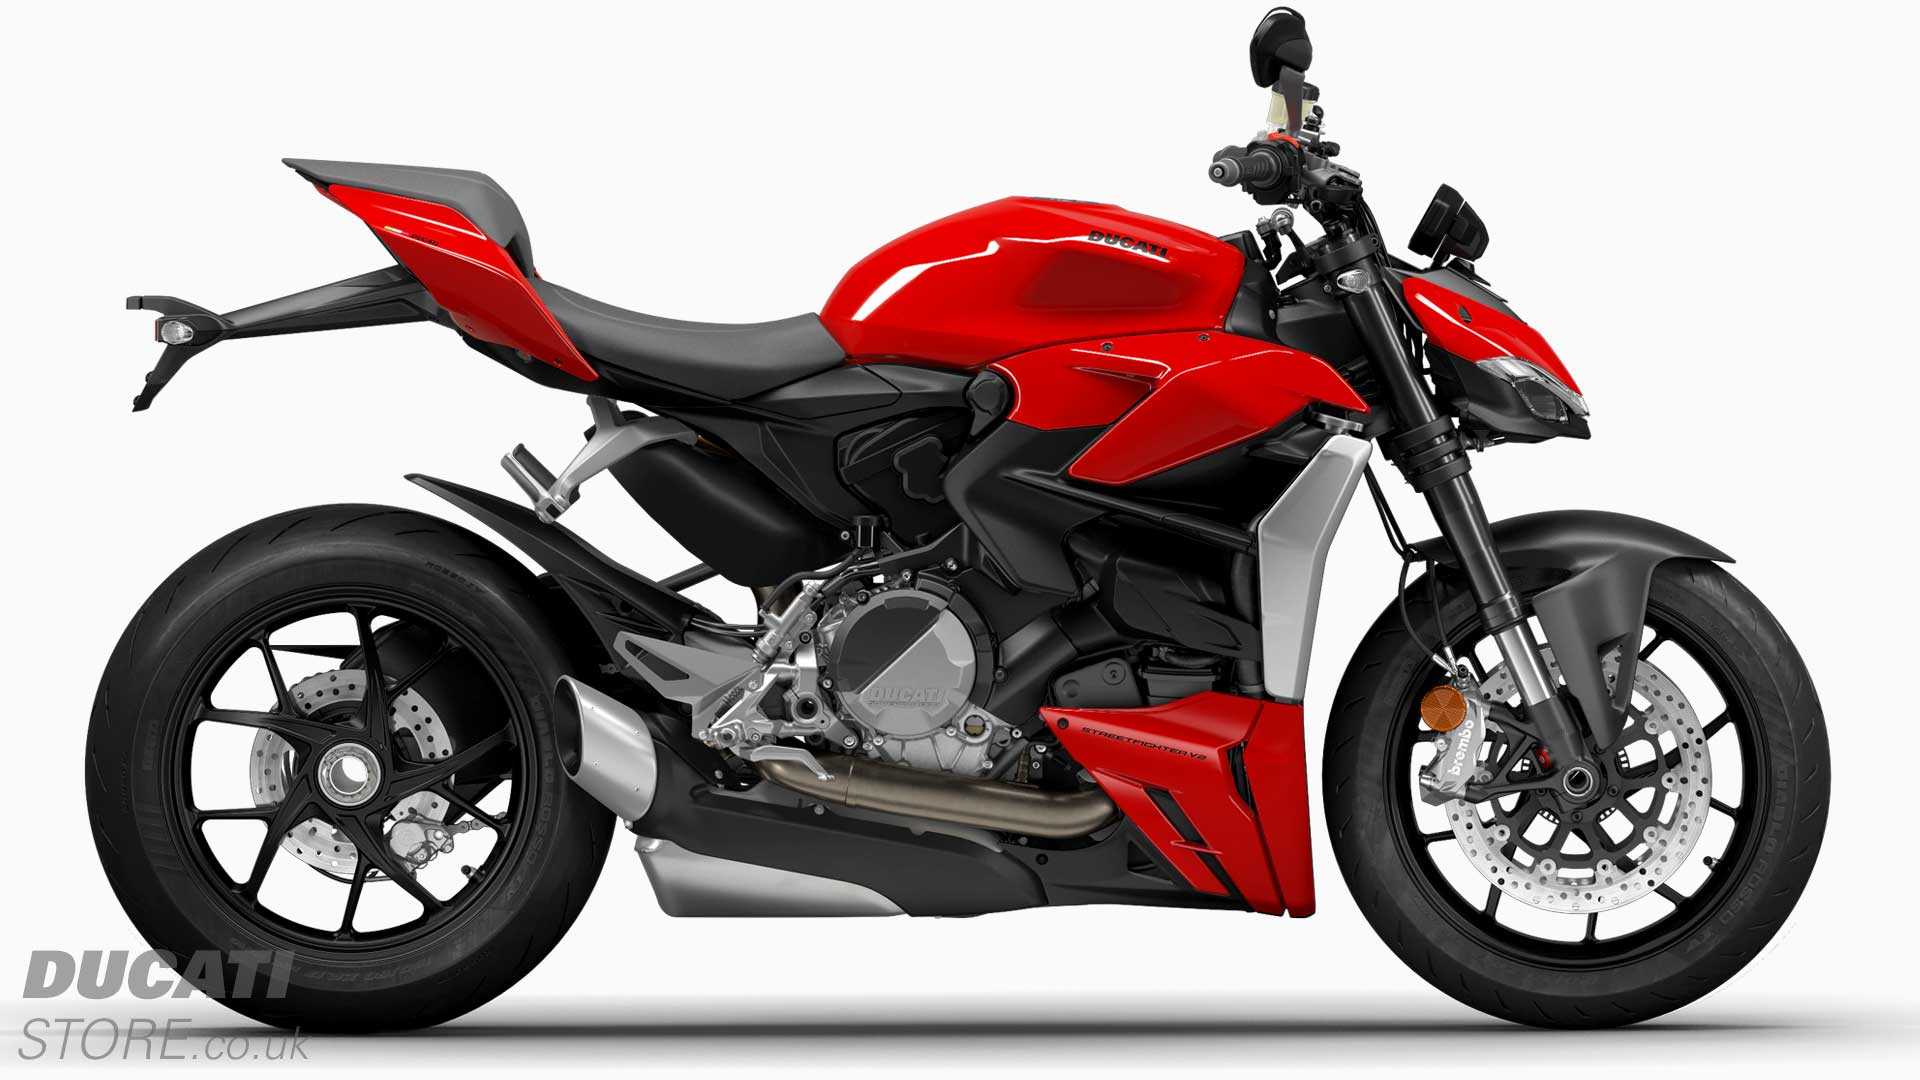 2022 Ducati Streetfighter V2 for sale at Ducati Preston, Lancashire, Scotland